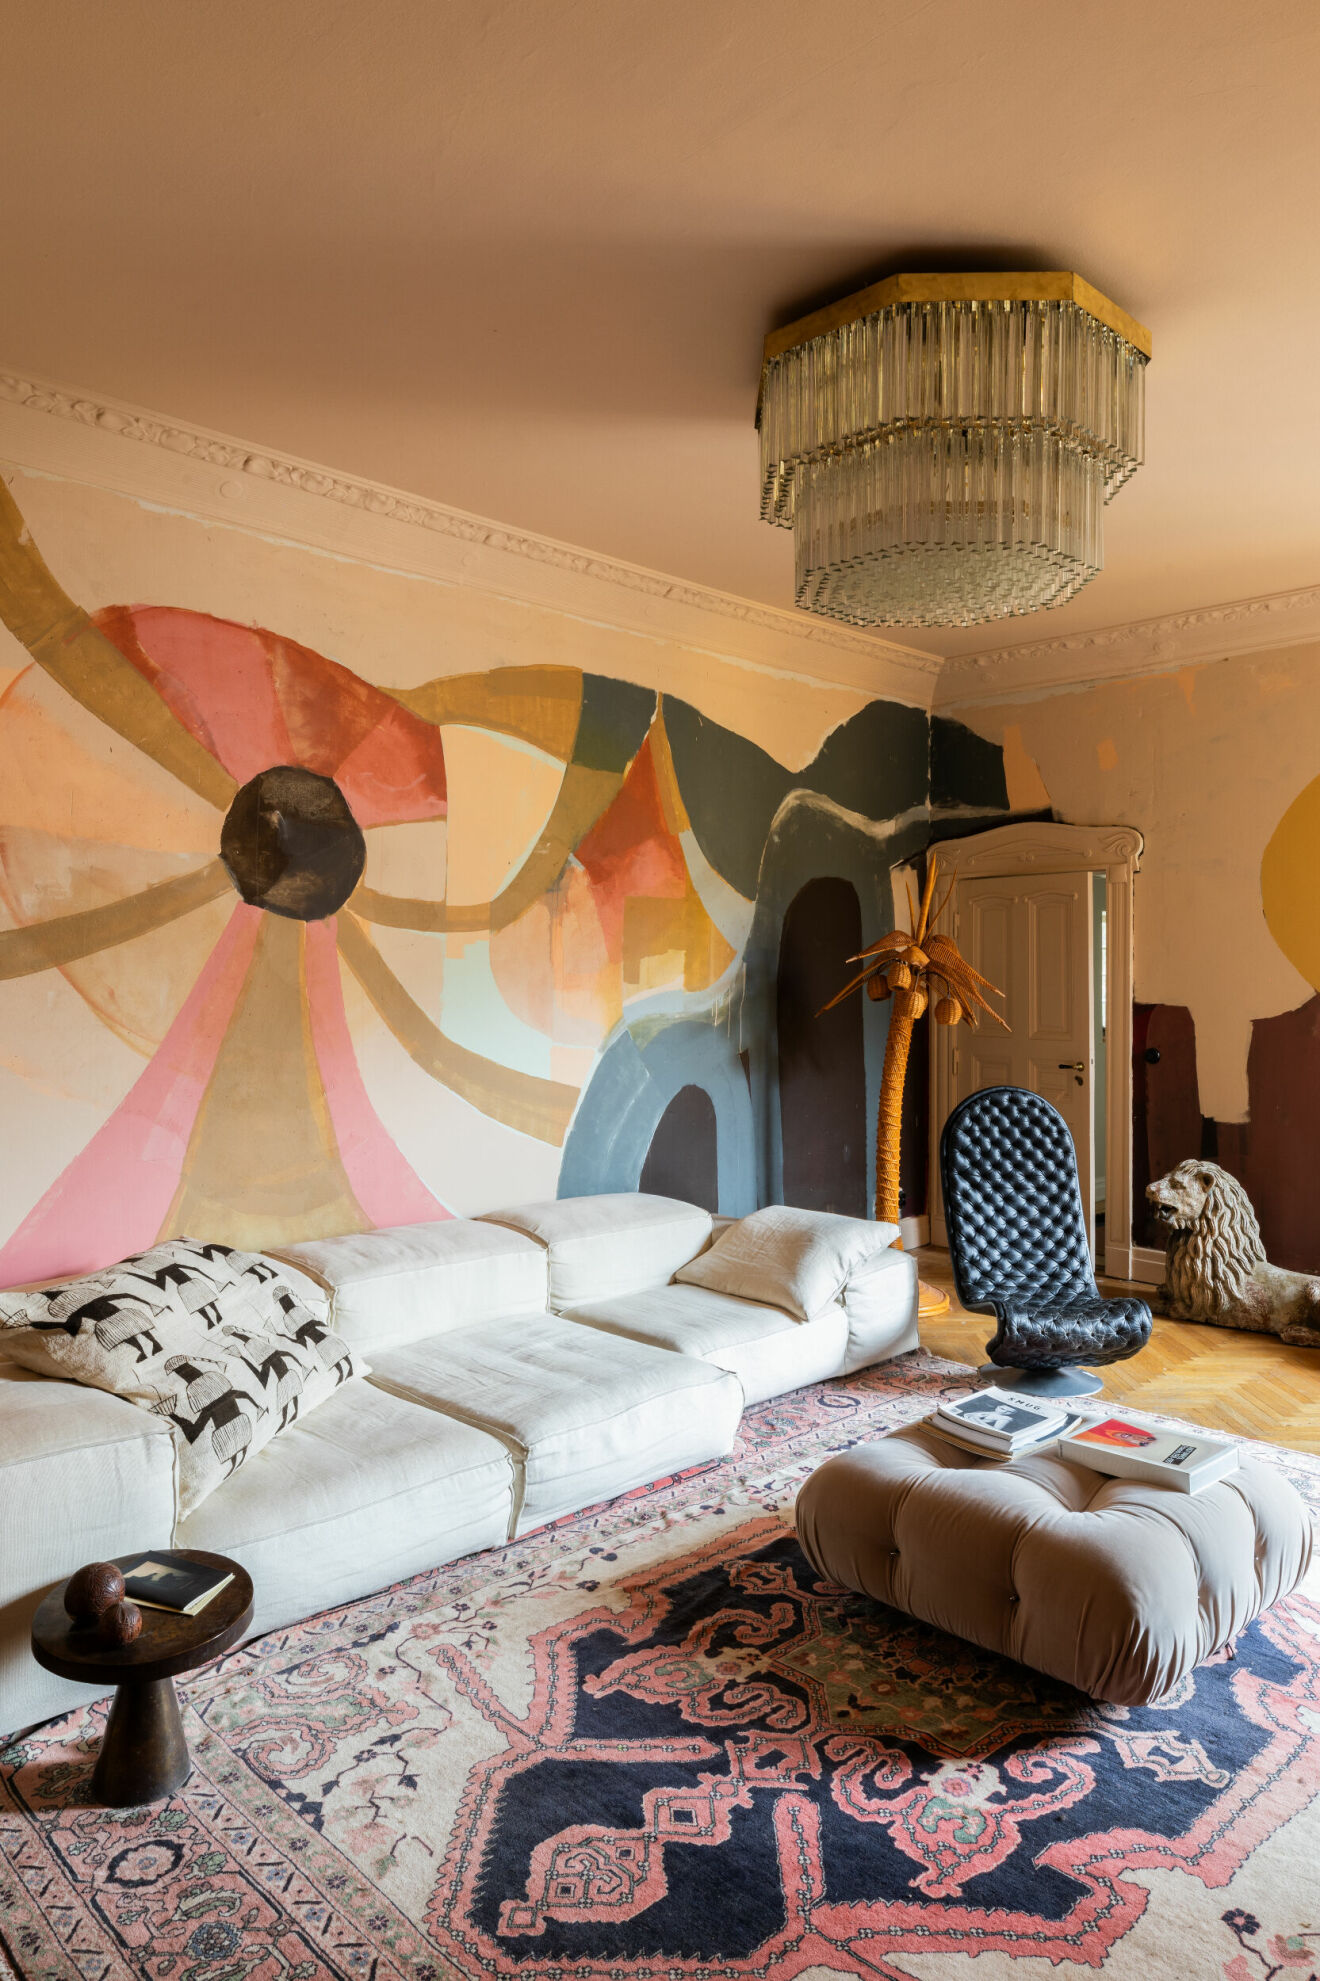 Soffa, Living divani, ­Karastan-matta, muralmålning av Mirja Ilkka som också målat väggarna i palatset på Sicilien. Snurrstol i skinn av Verner Panton.